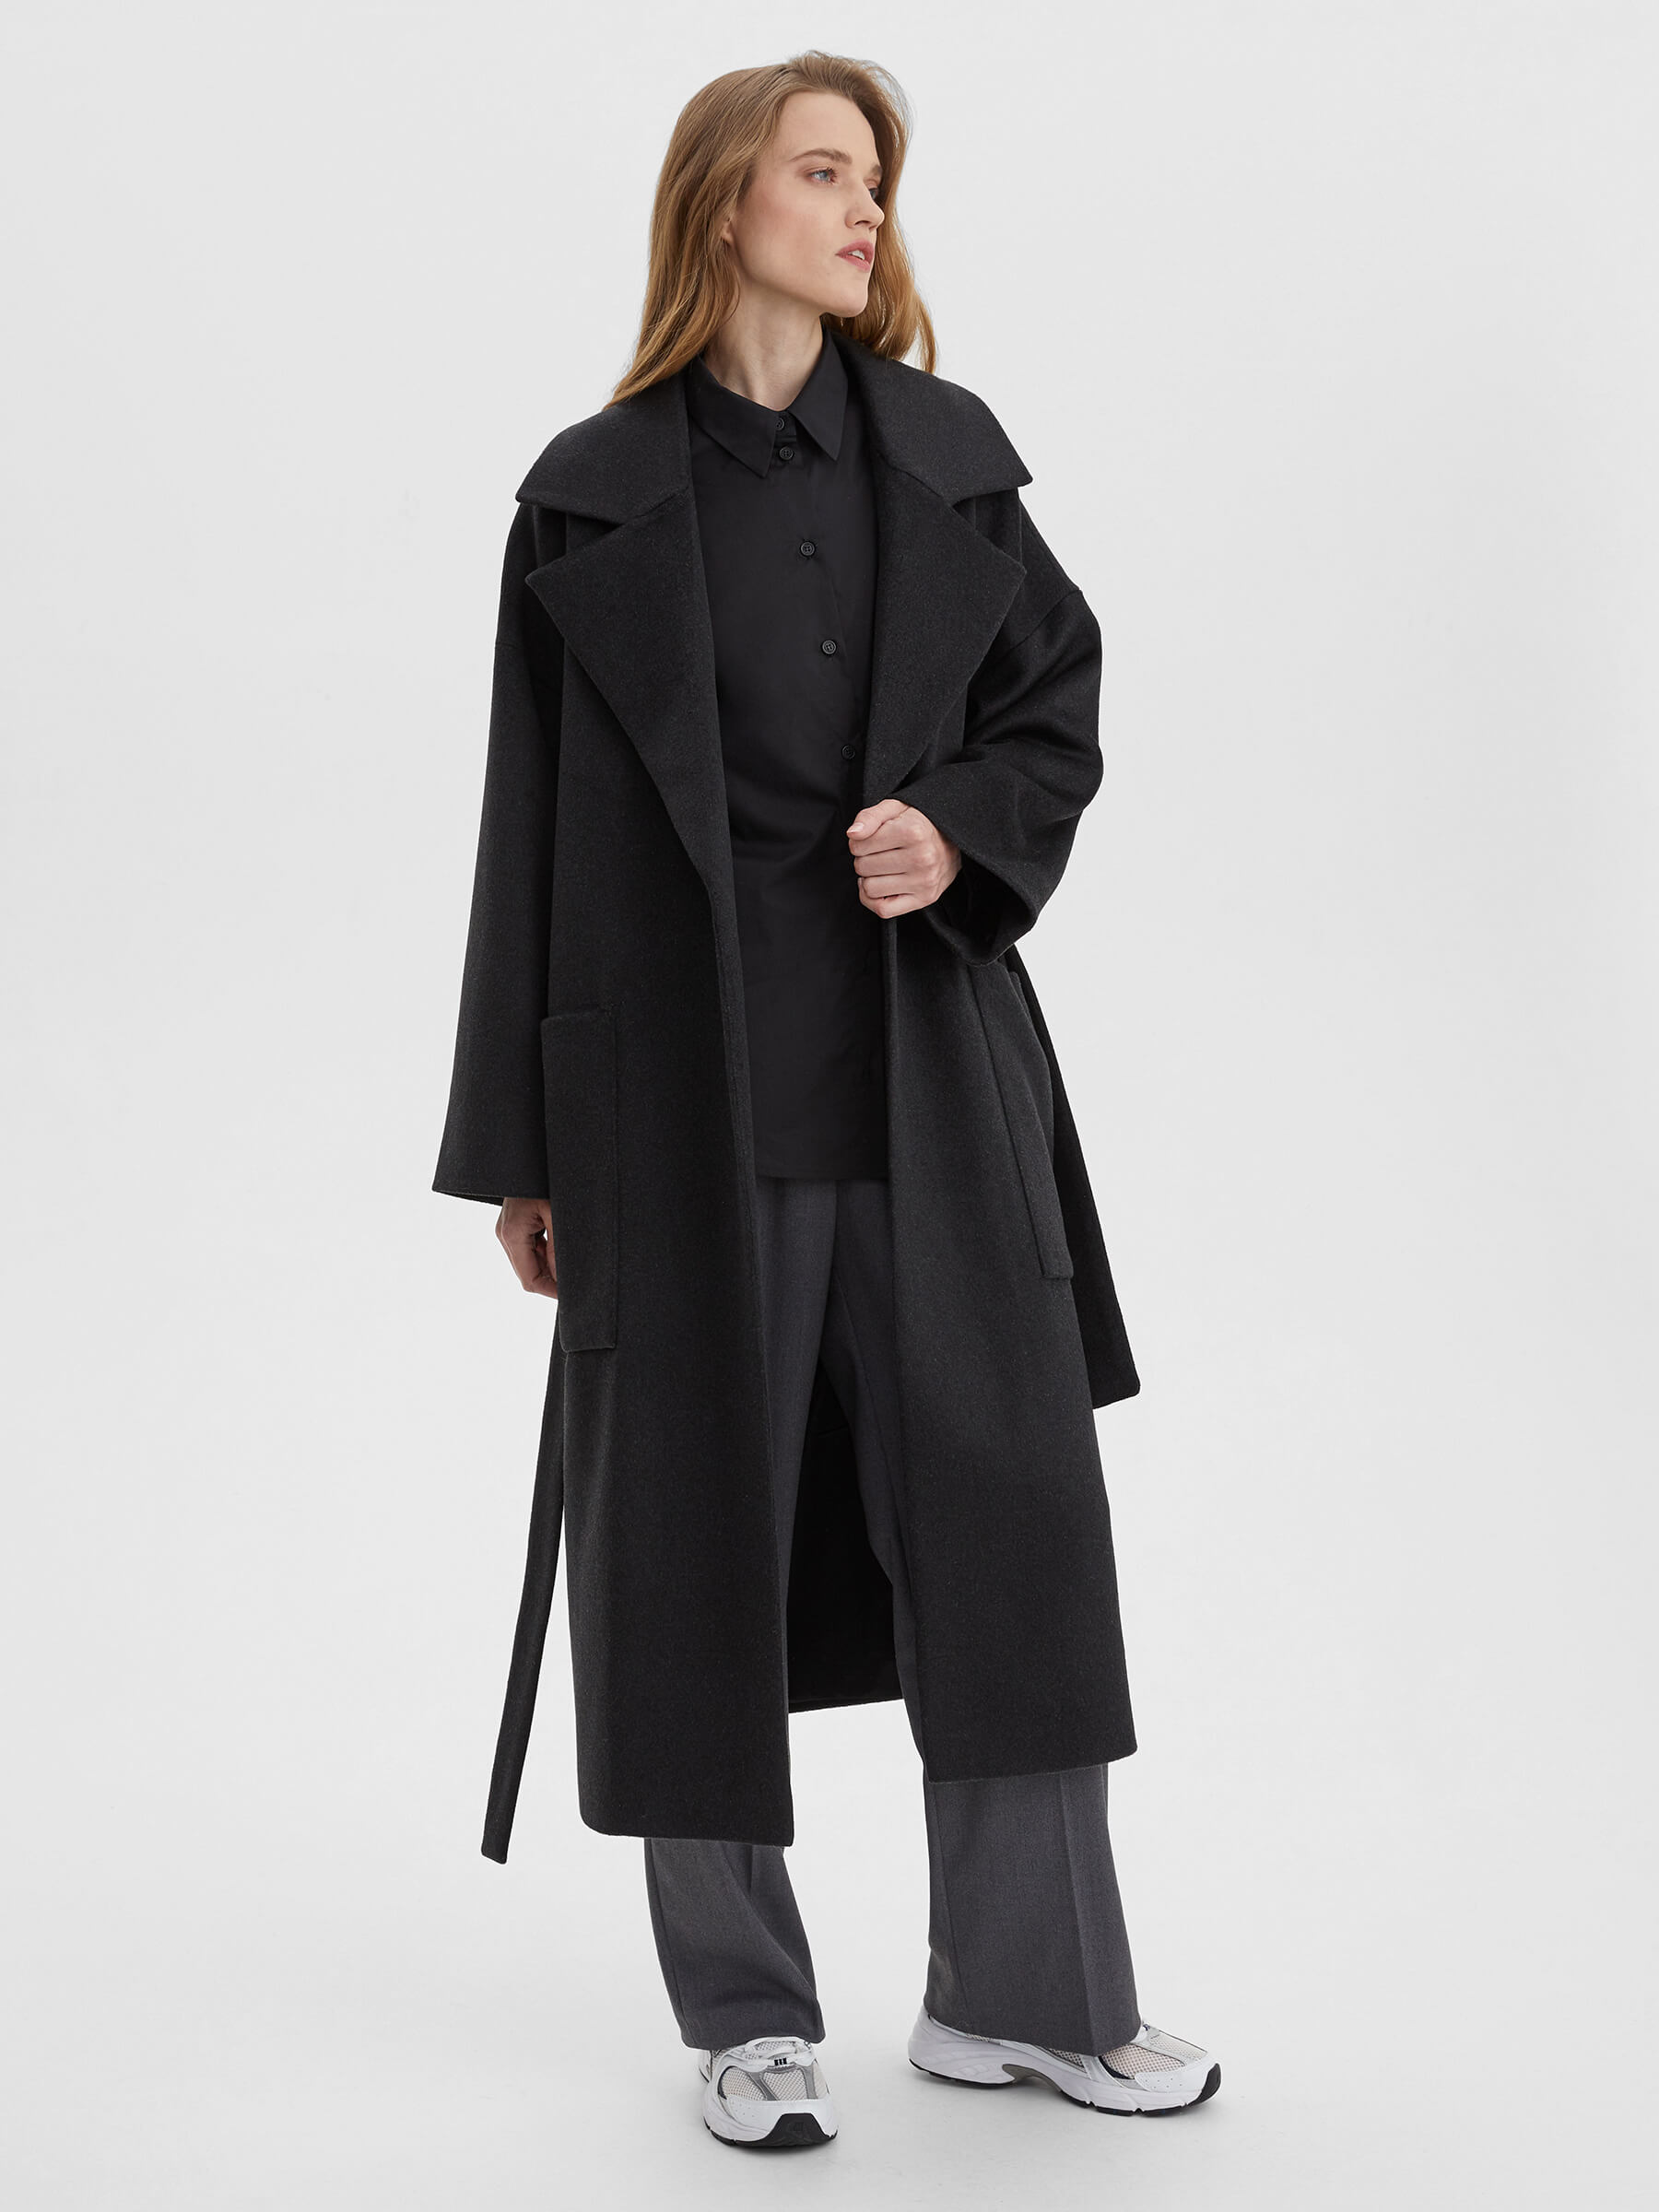 Пальто женское длинное с объемными карманами и поясом, цвет – антрацит женское шерстяное пальто с поясом теплое двубортное пальто средней длины с отложным воротником в корейском стиле осень зима 2021